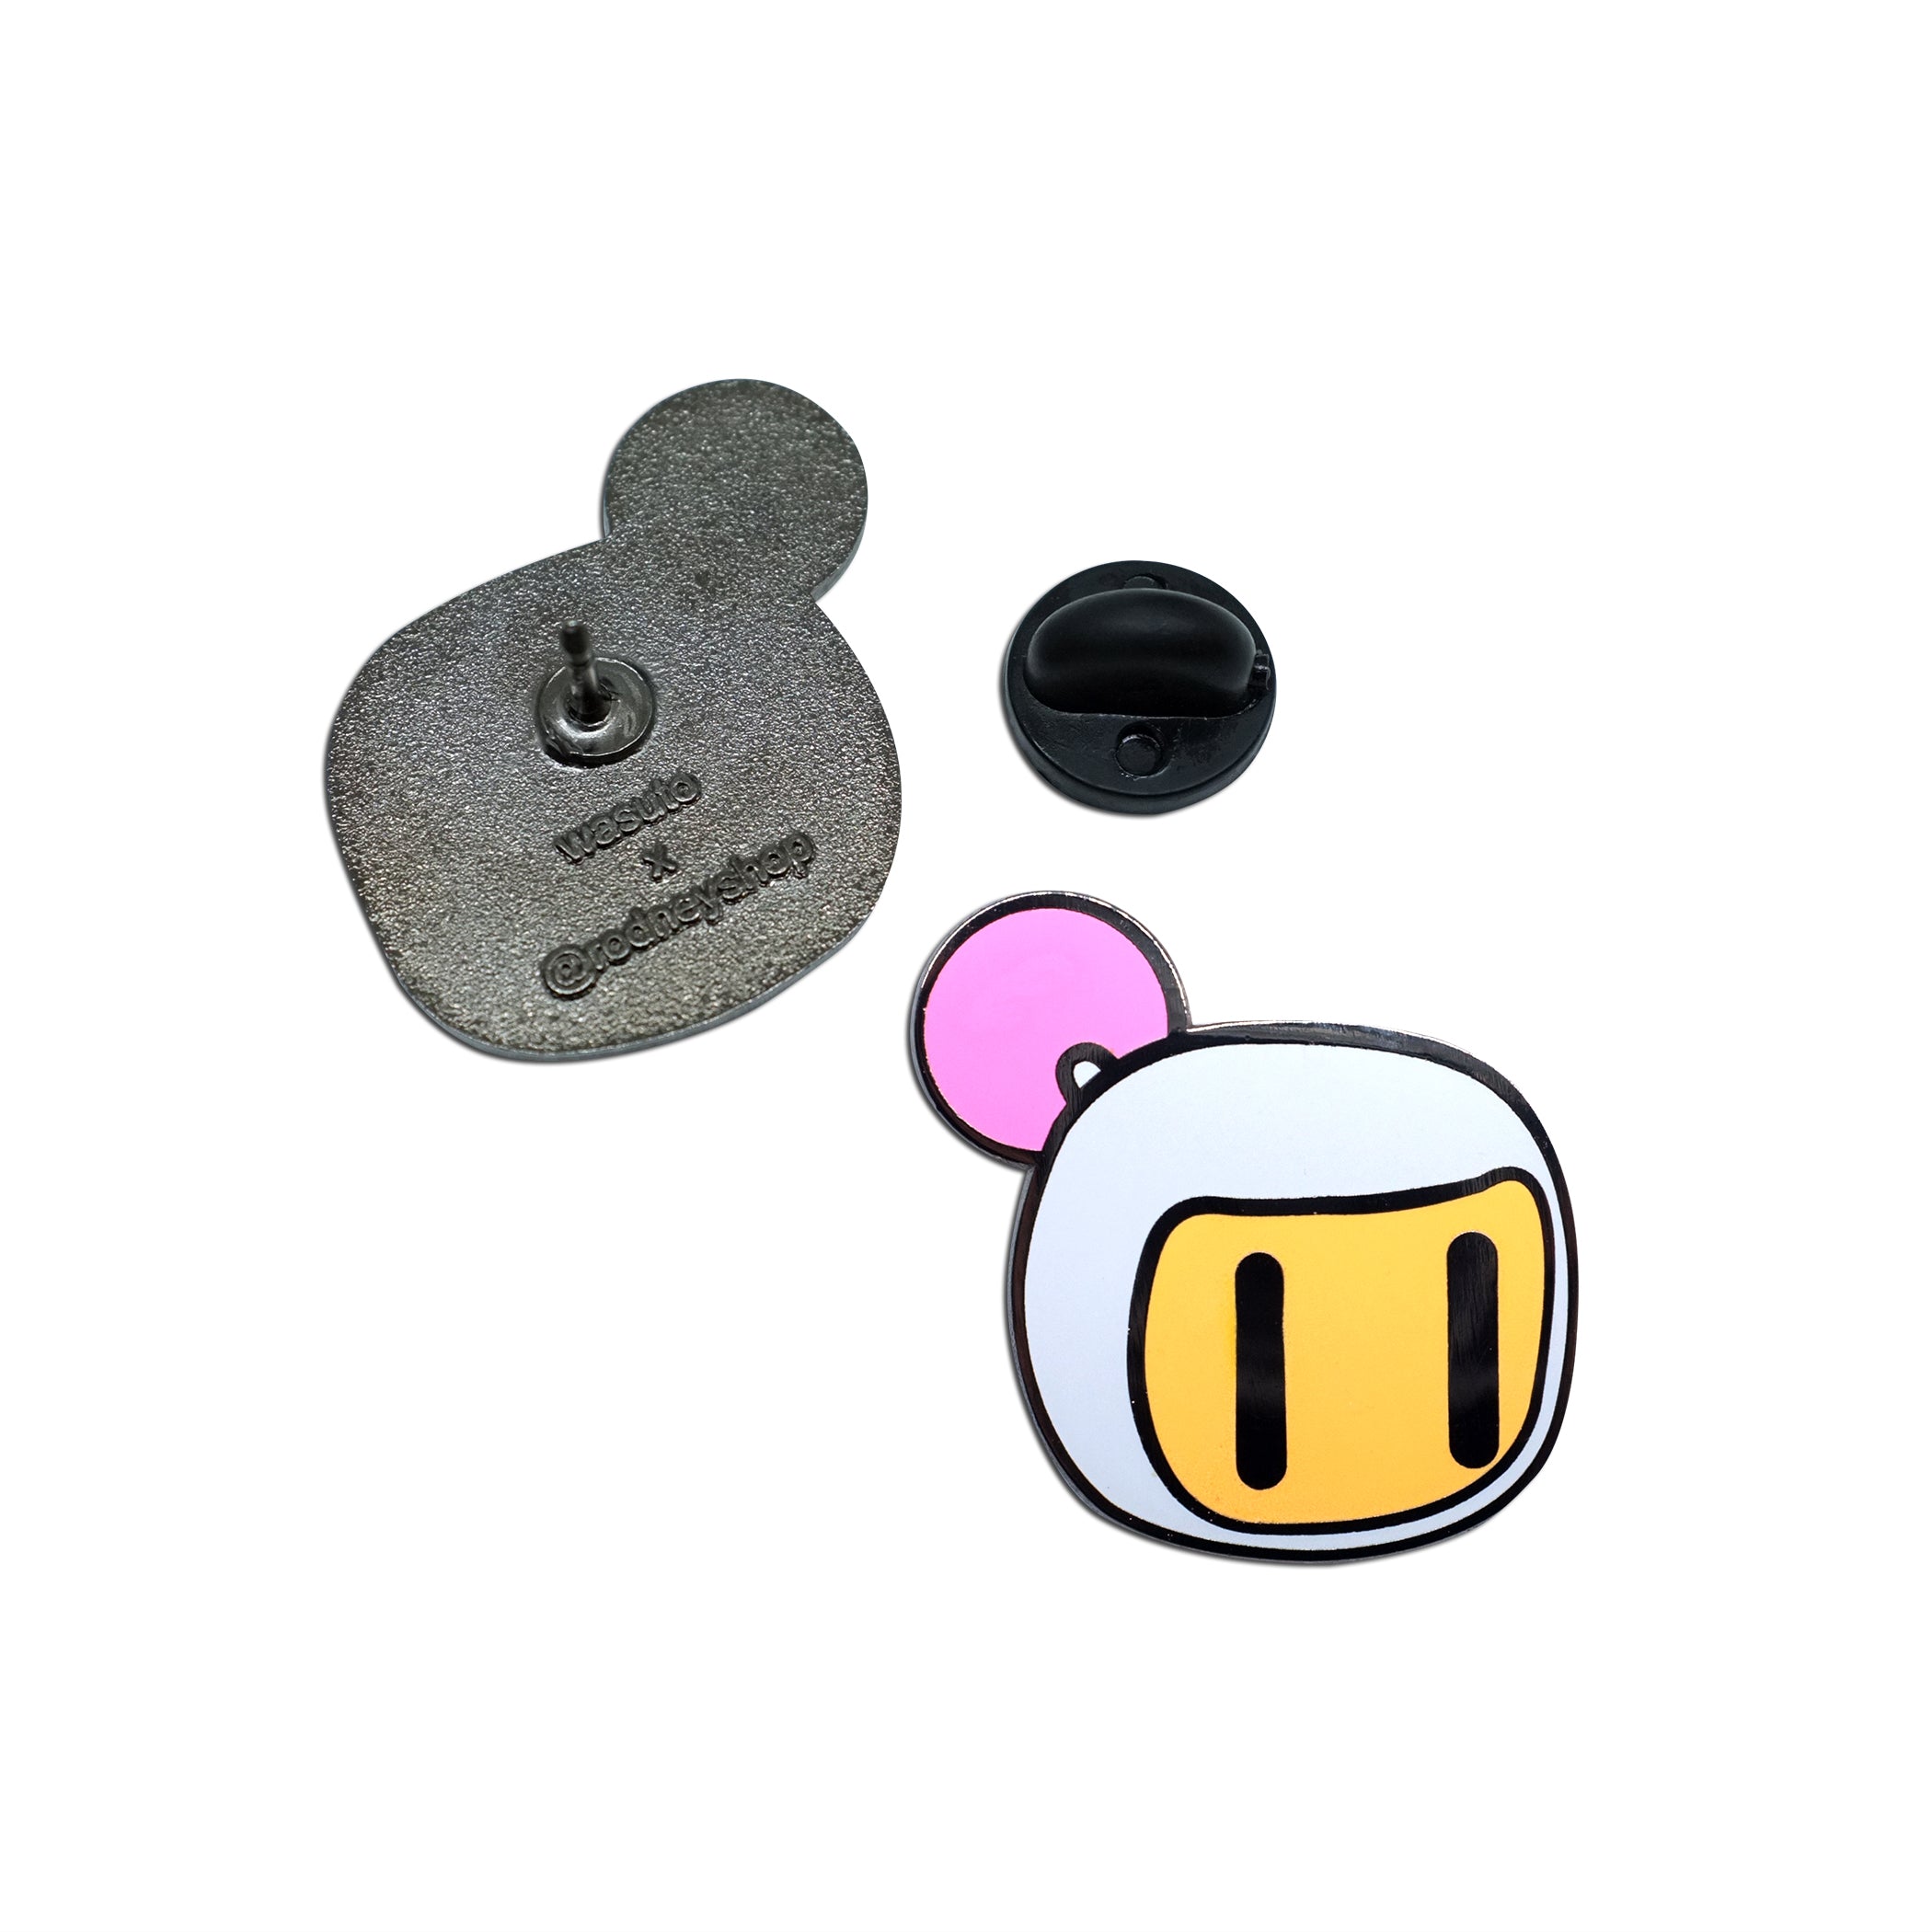 Pin by BombermanFan2016 on Black Bomberman